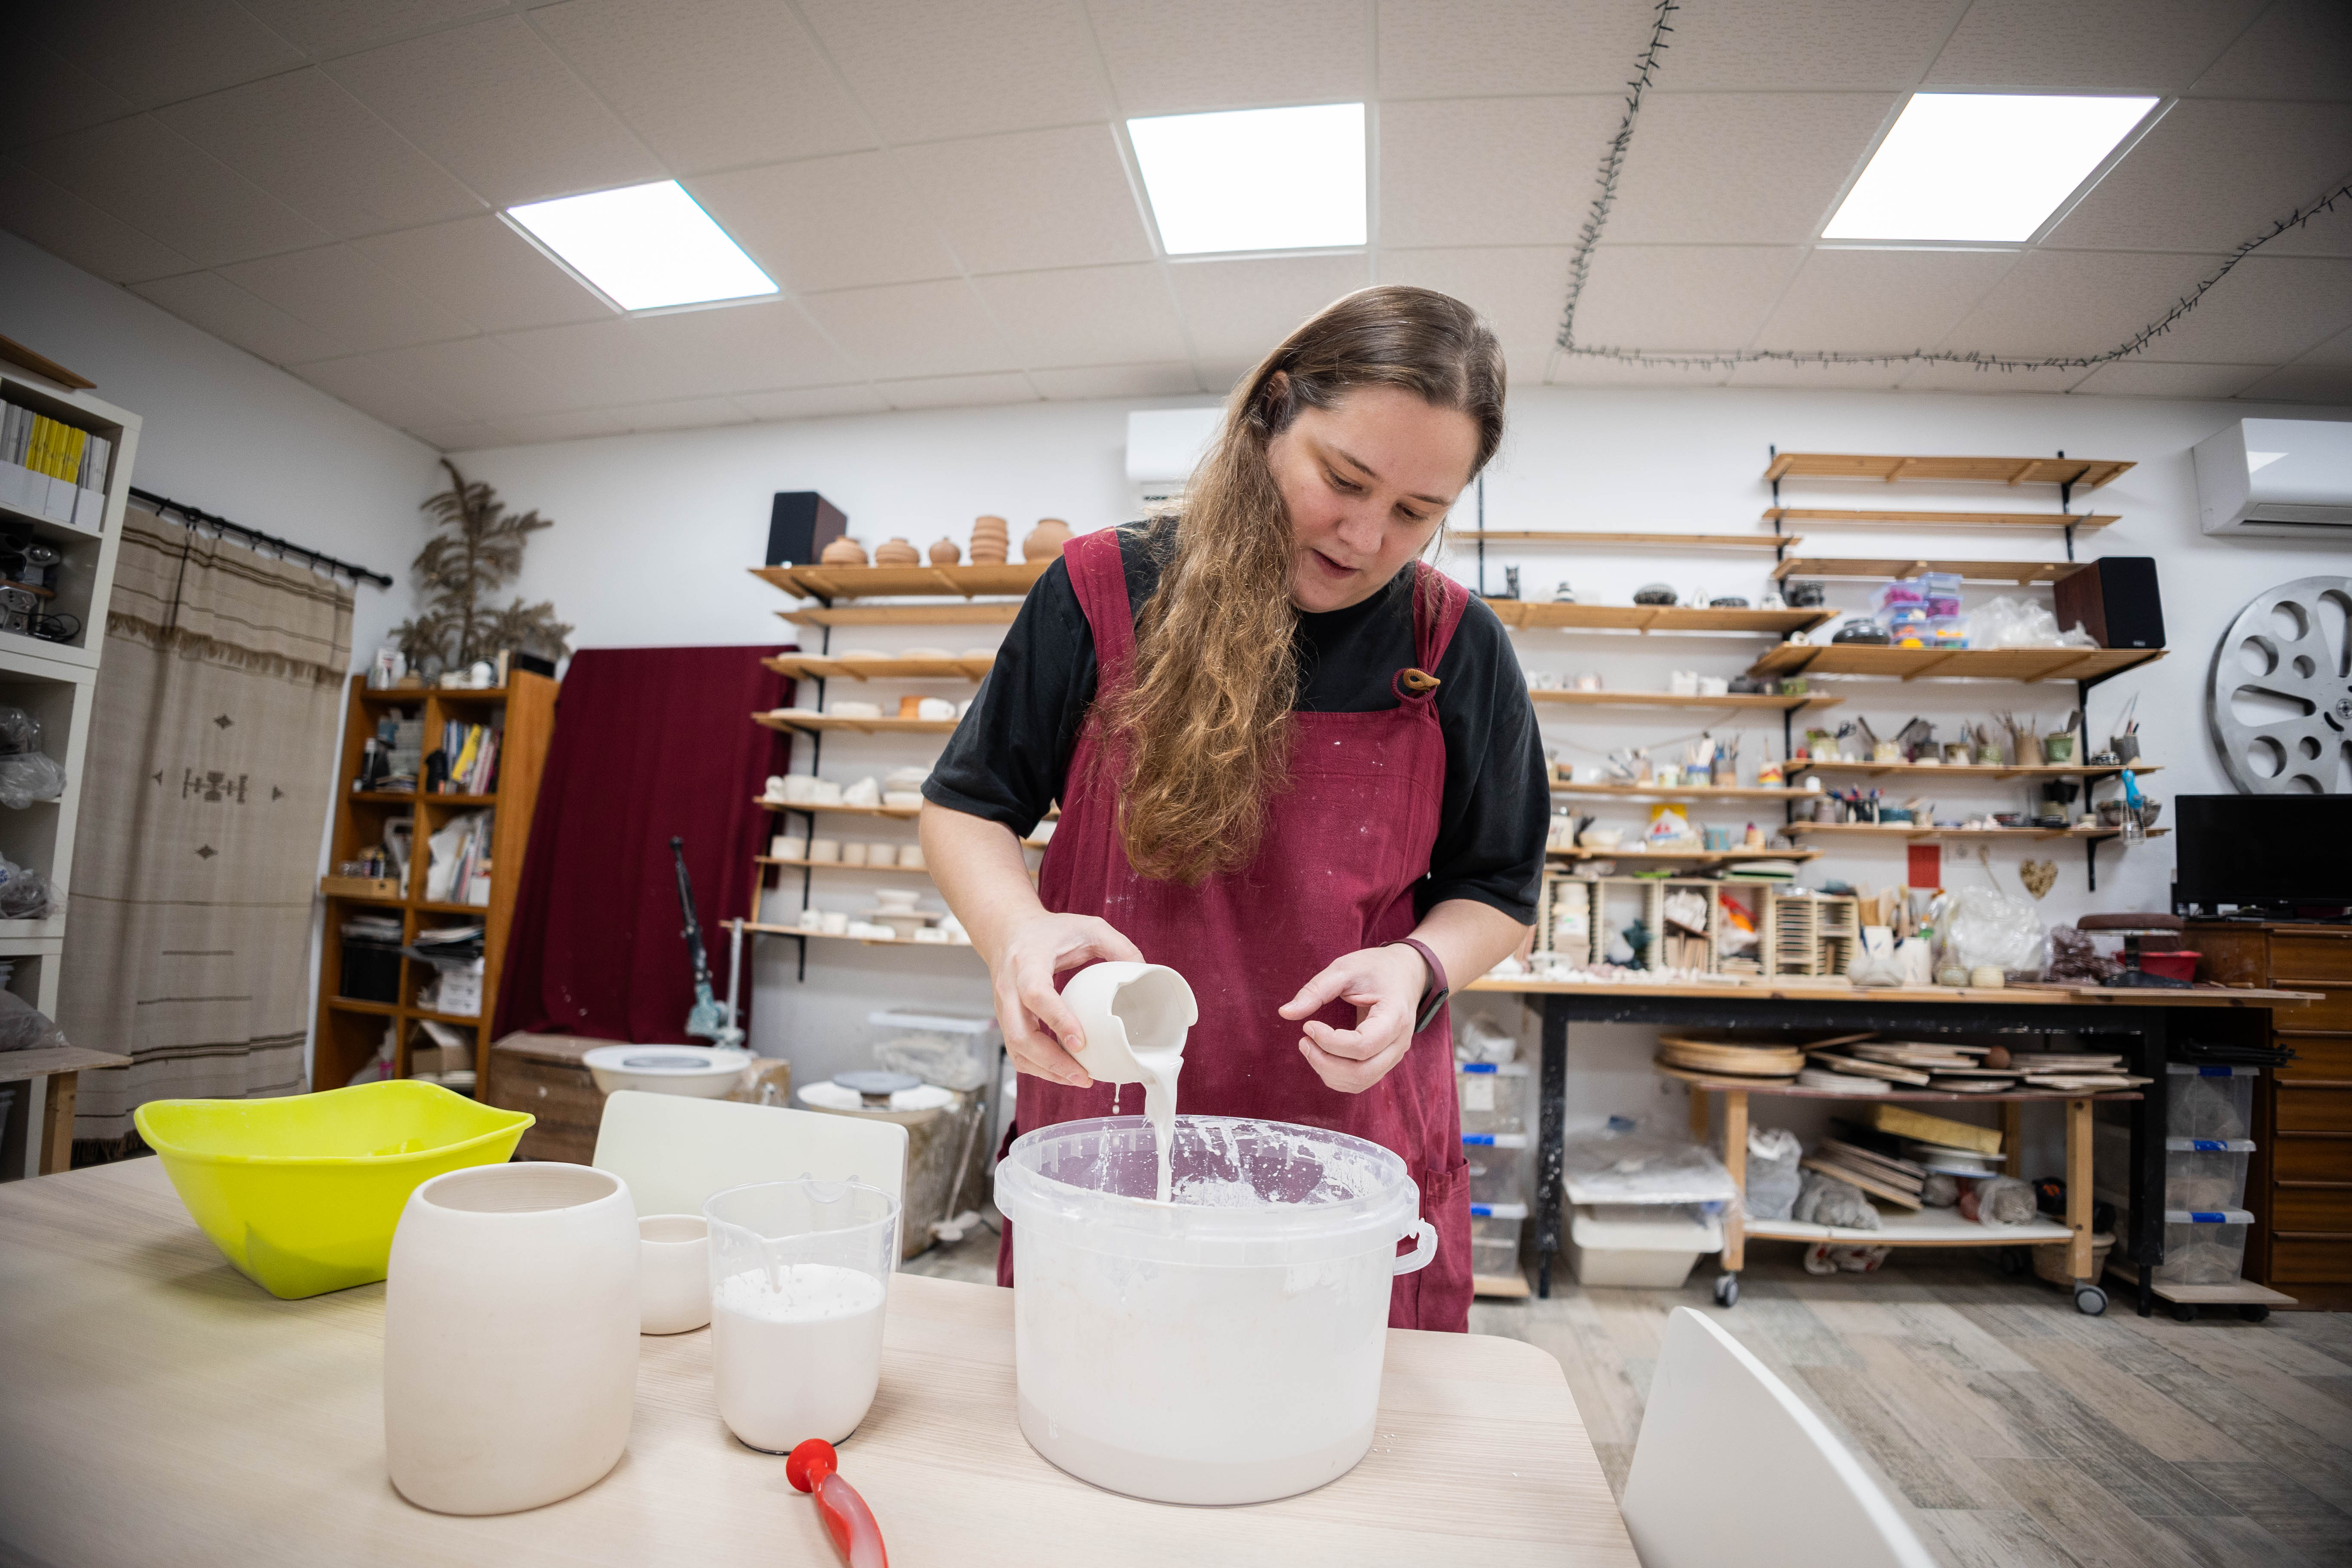 La ceramista trabaja en su taller, donde también da clases.